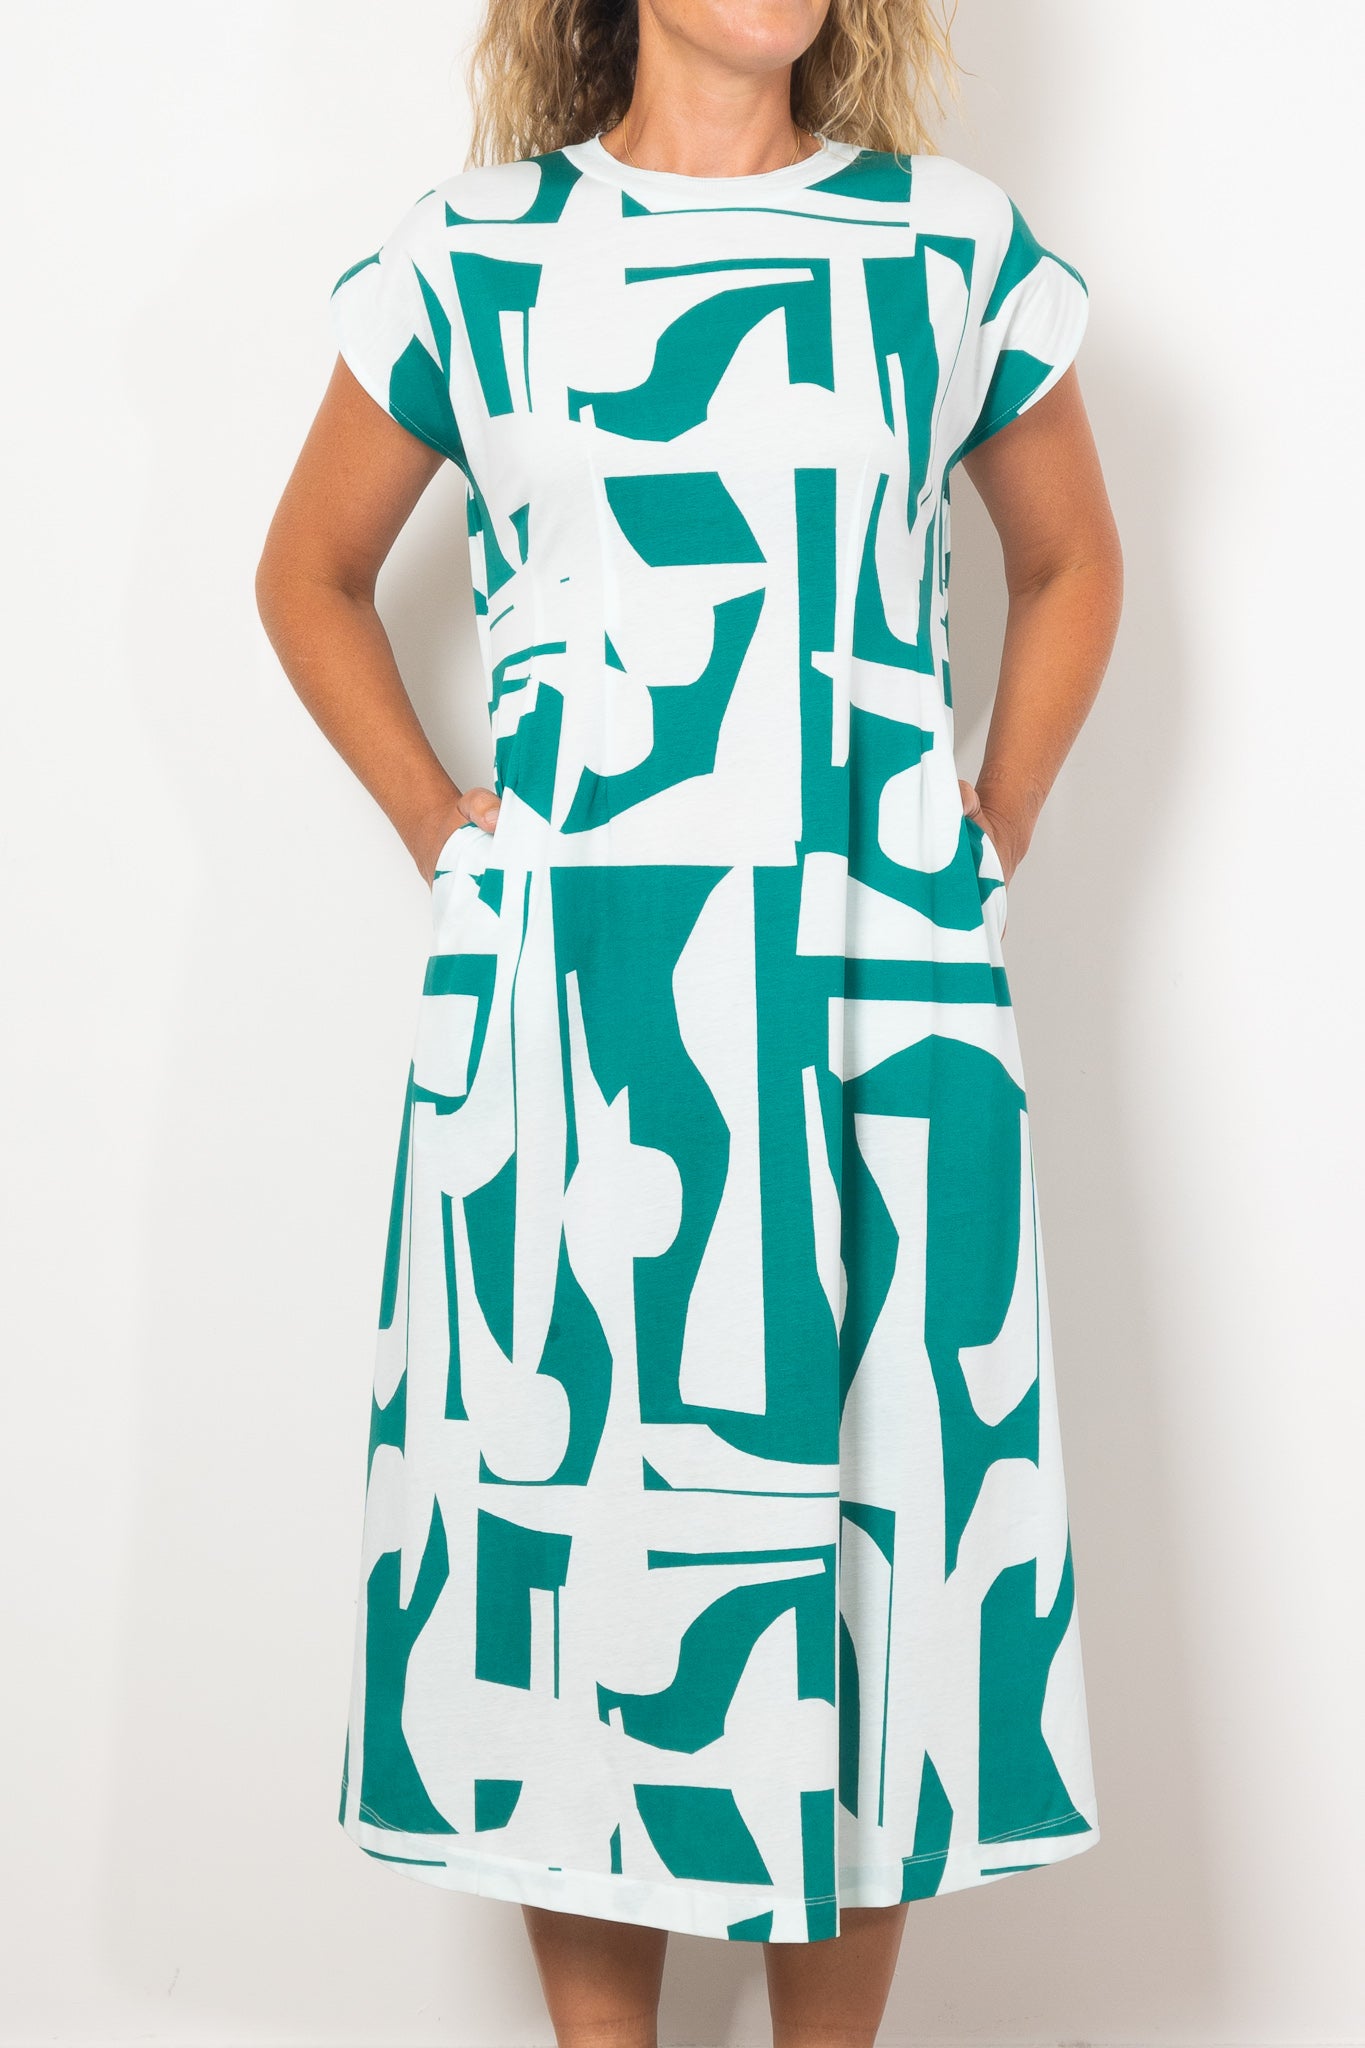 ELK Joia Braque Print Jersey Dress